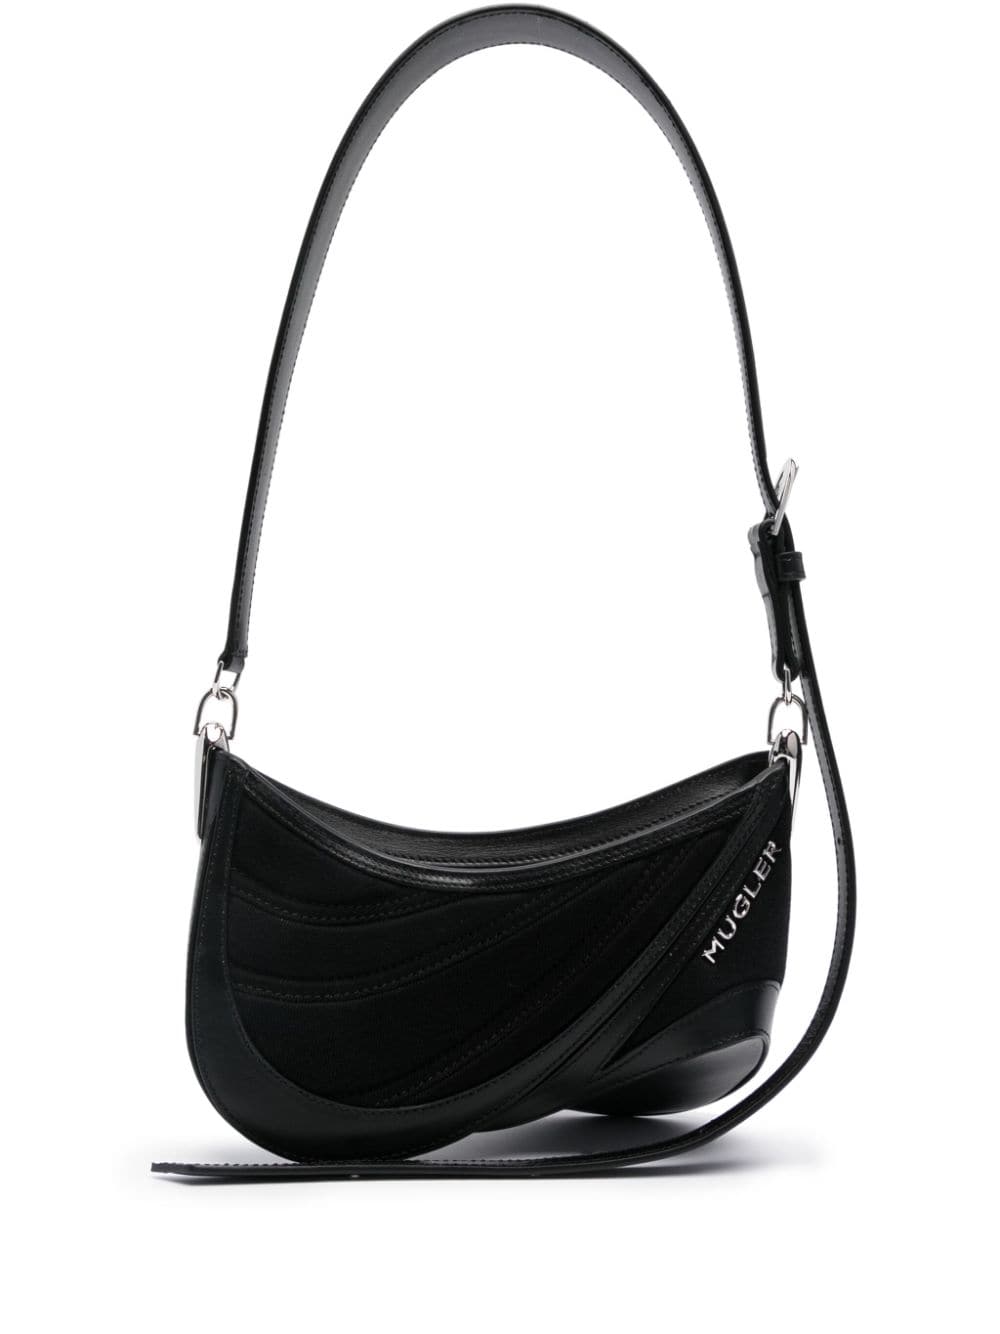 MUGLER Spiral Curve 01 Shoulder Handbag in Black